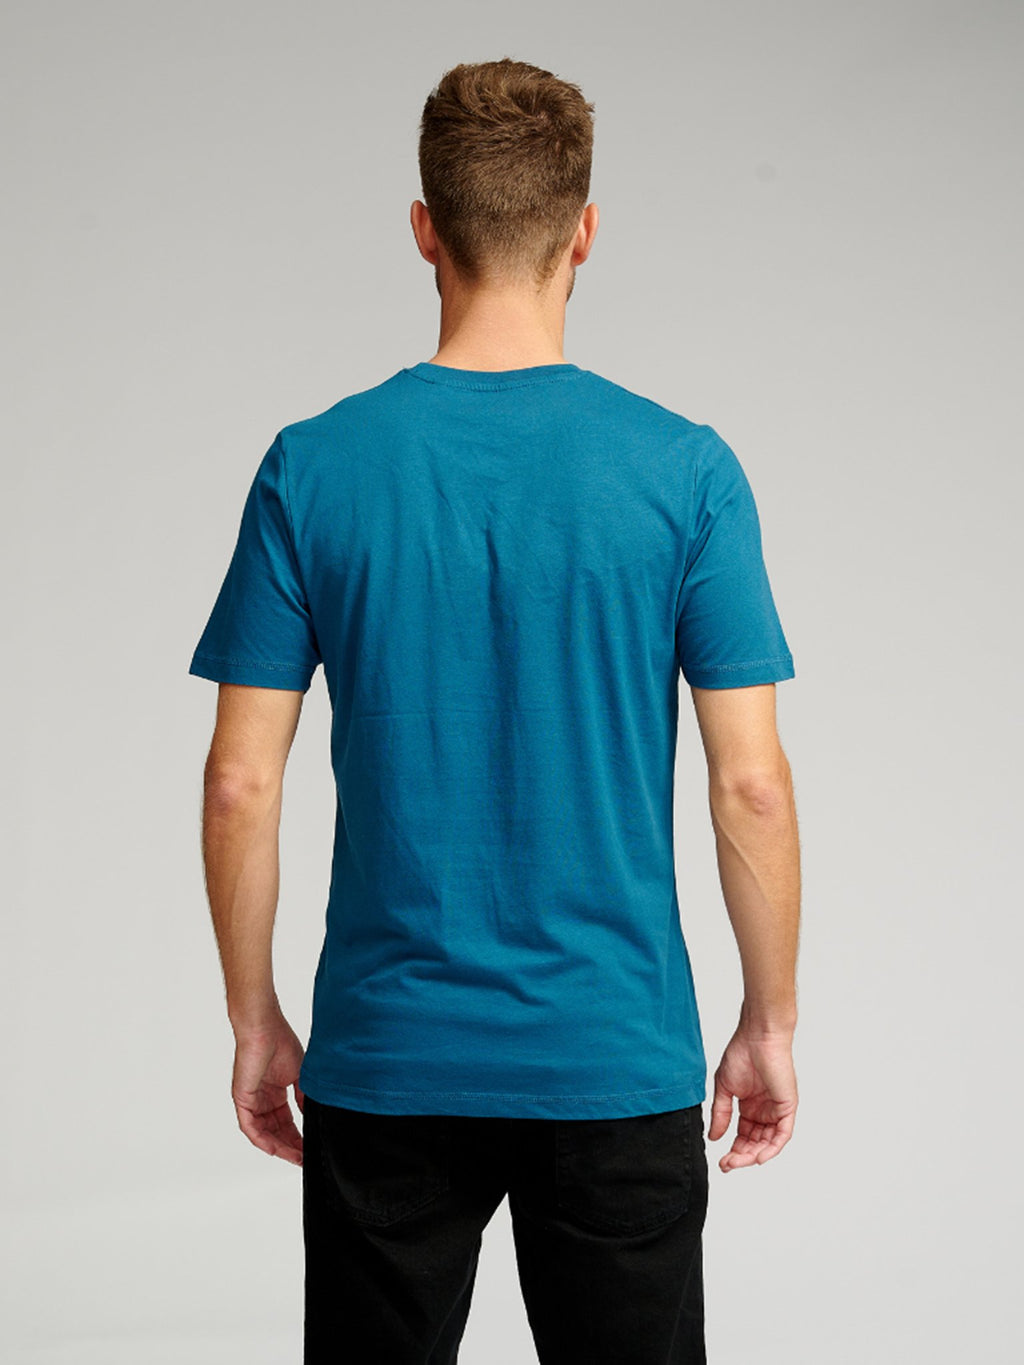 Organska osnovna majica - benzinska plava